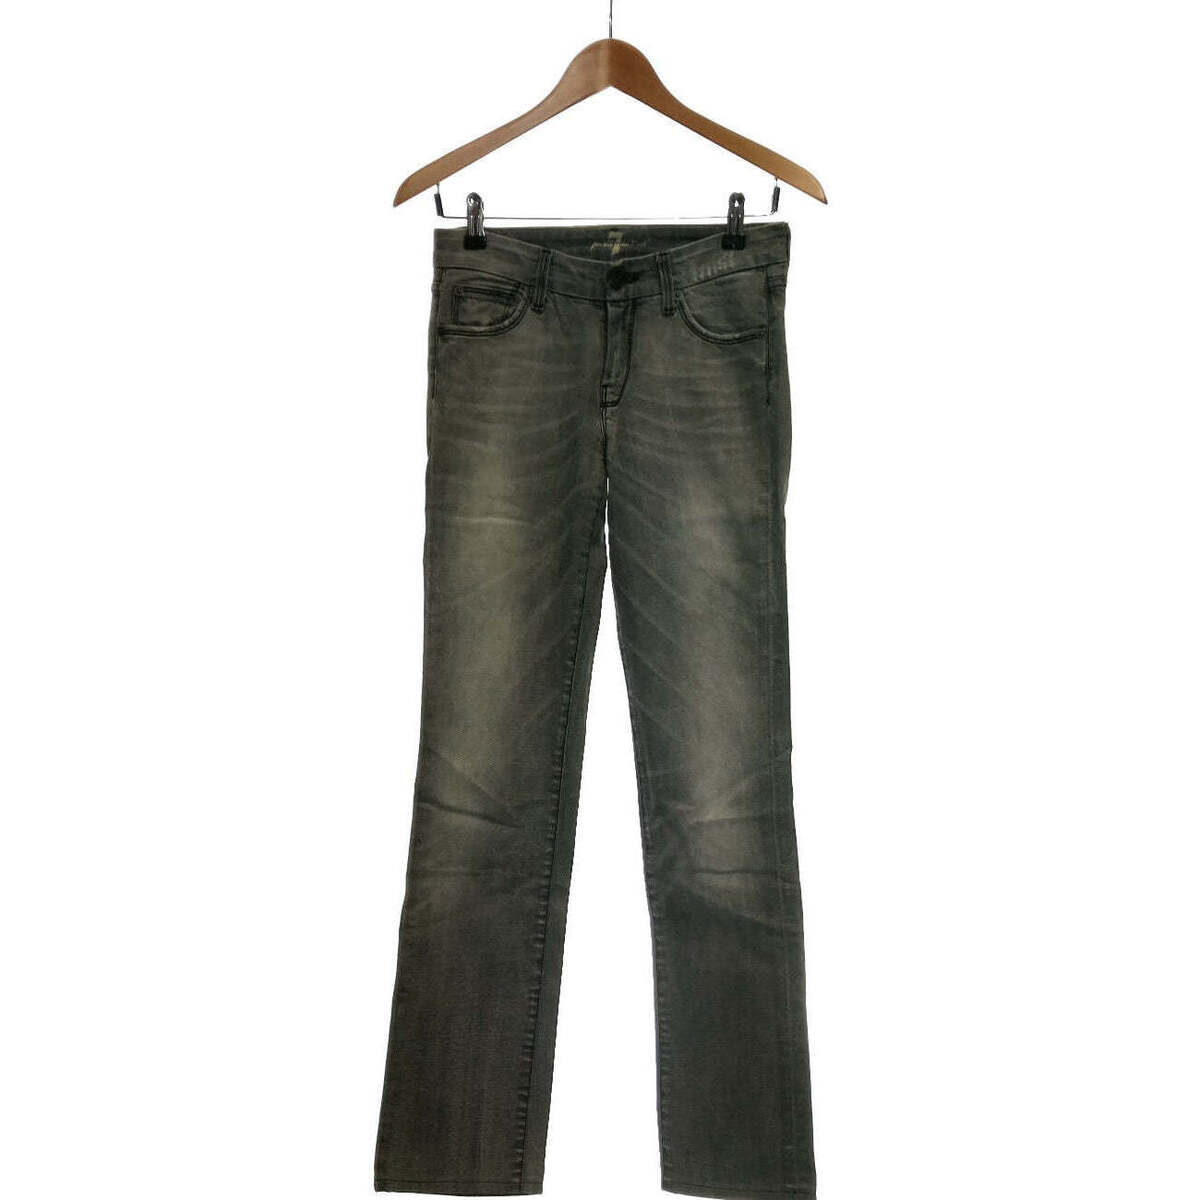 Vêtements Femme Shirt Jeans 7 for all Mankind 34 - T0 - XS Gris